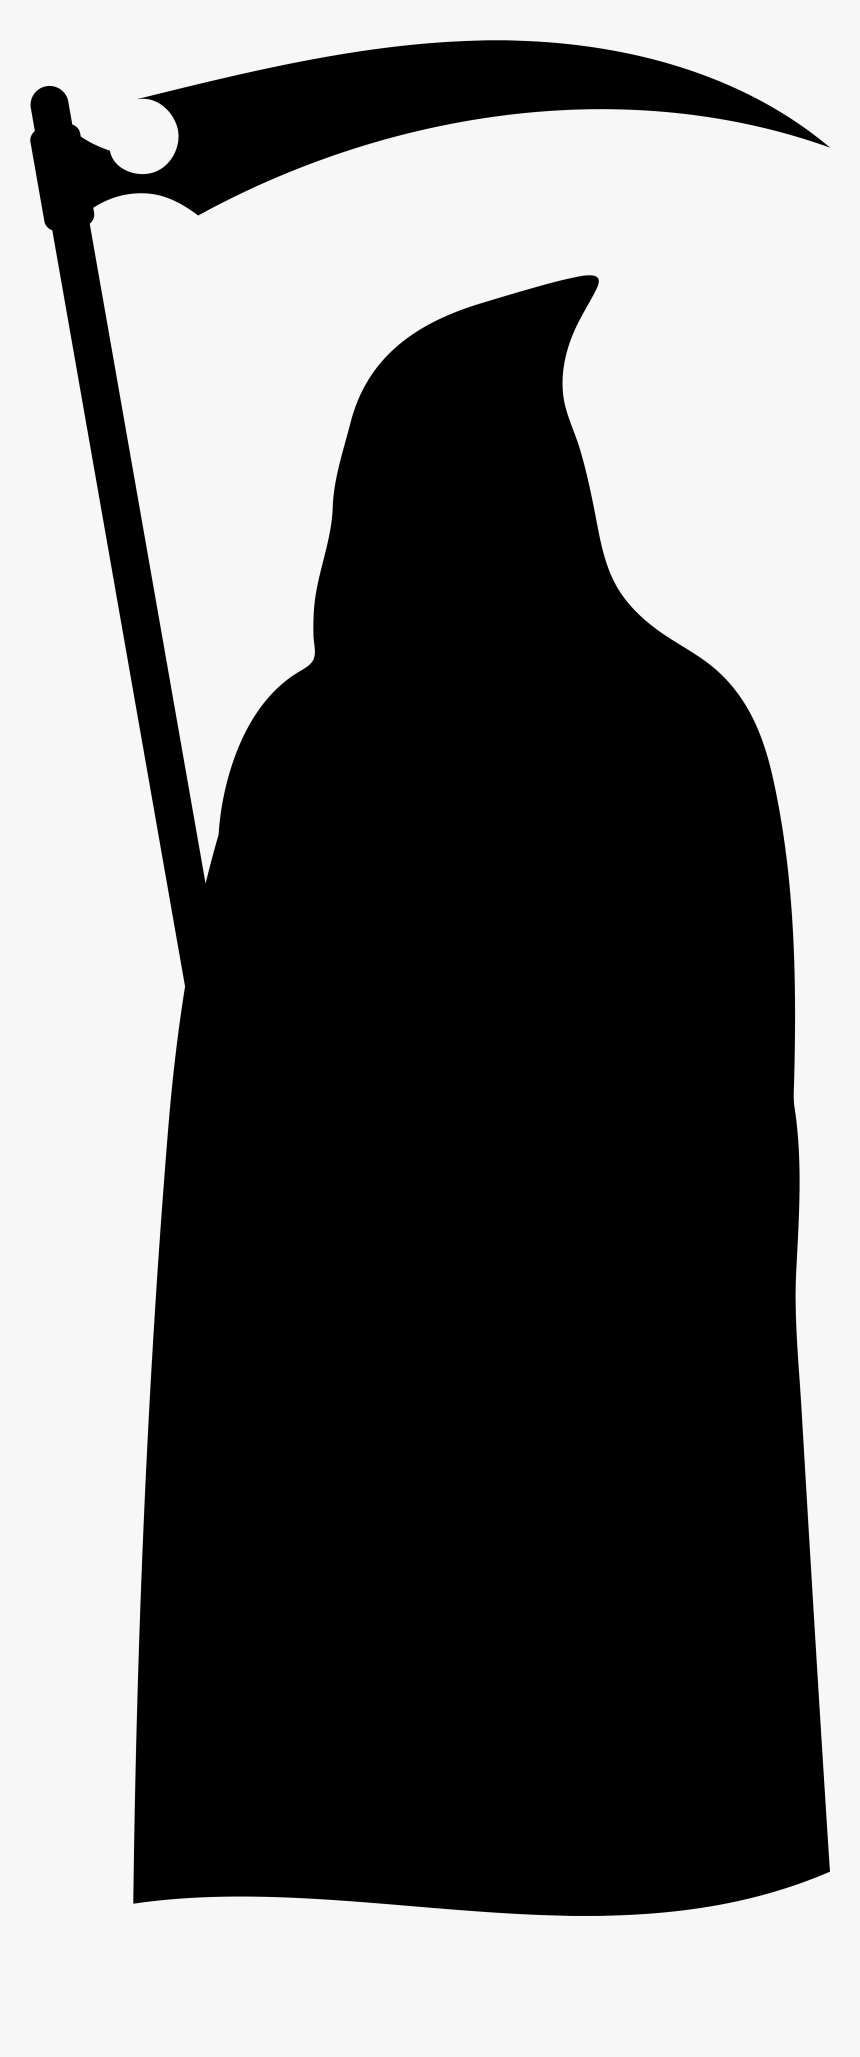 Grim Reaper Silhouette Png Clip Art Imageu200b Gallery - Grim Reaper Silhouette Png, Transparent Png, Free Download